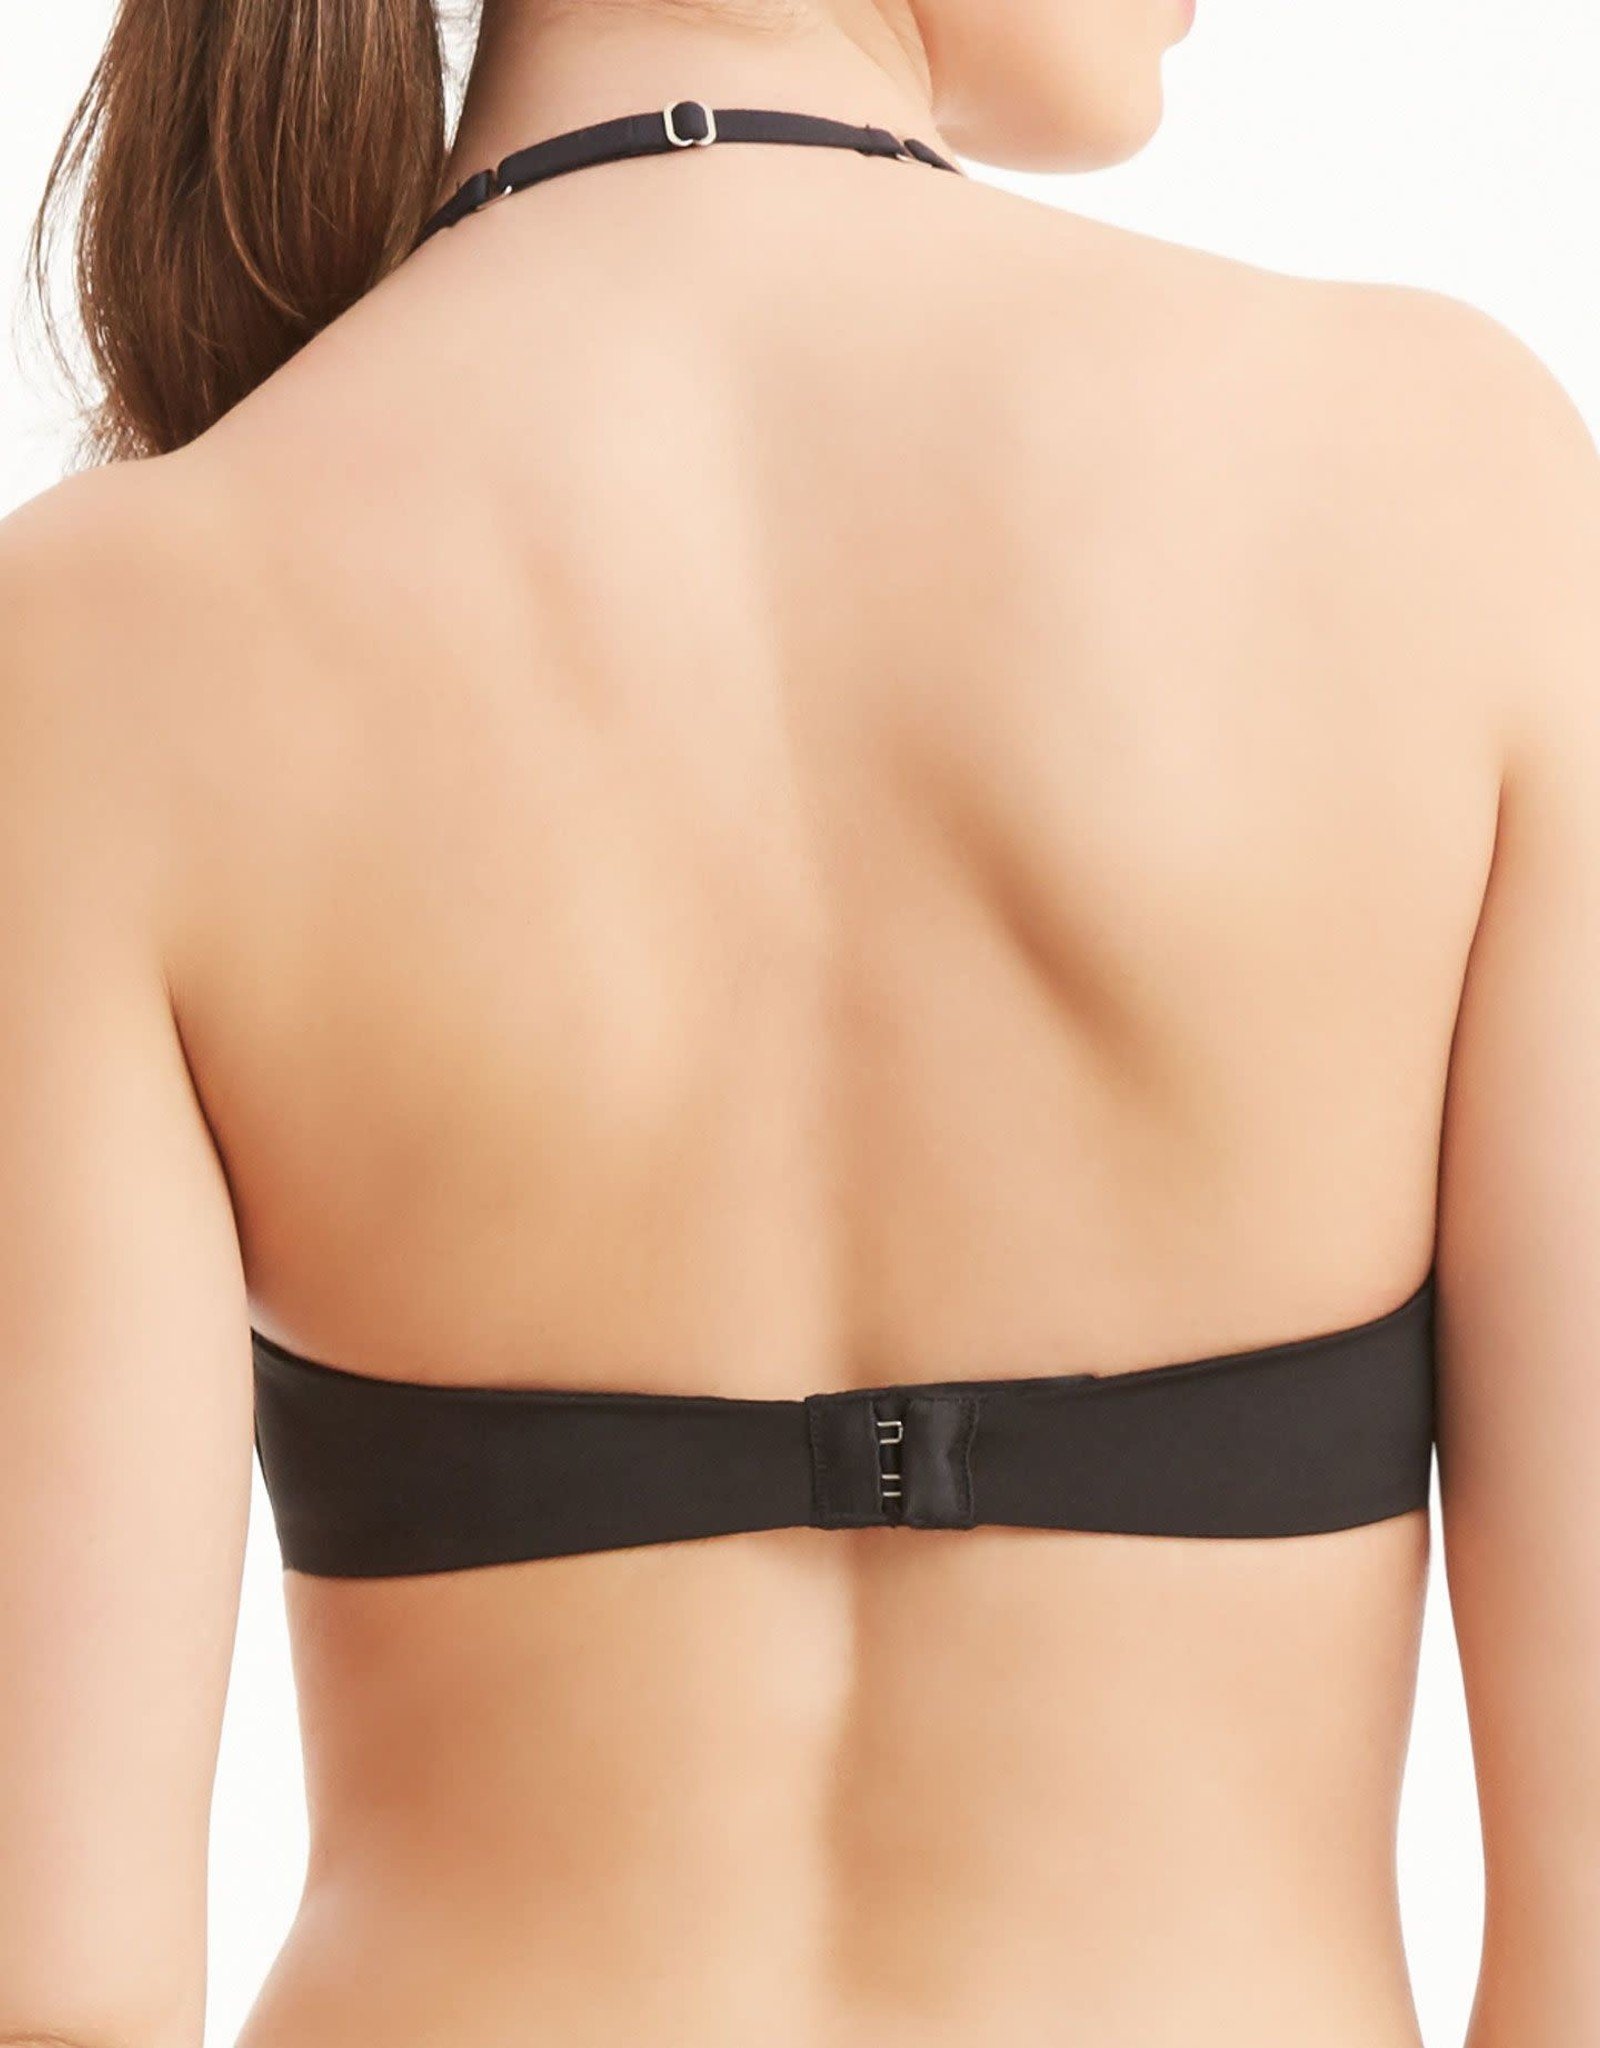 The Montelle wire-free bra